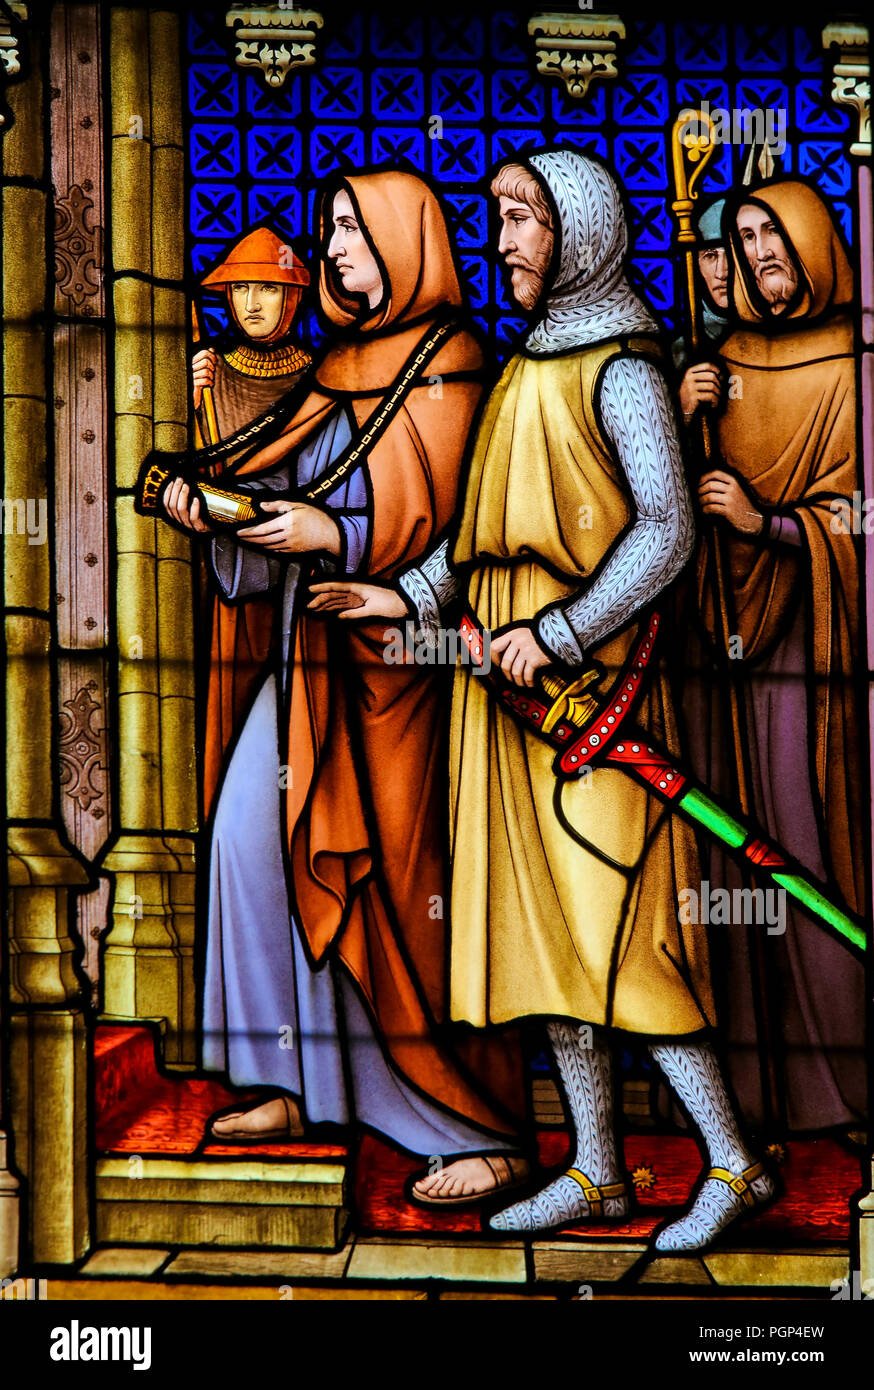 Glasmalereien in der Basilika des Heiligen Blutes in Brügge, Belgien, mit der Darstellung der Reliquie des Heiligen Blut aus dem Heiligen Land von Crusader Thier gebracht Stockfoto